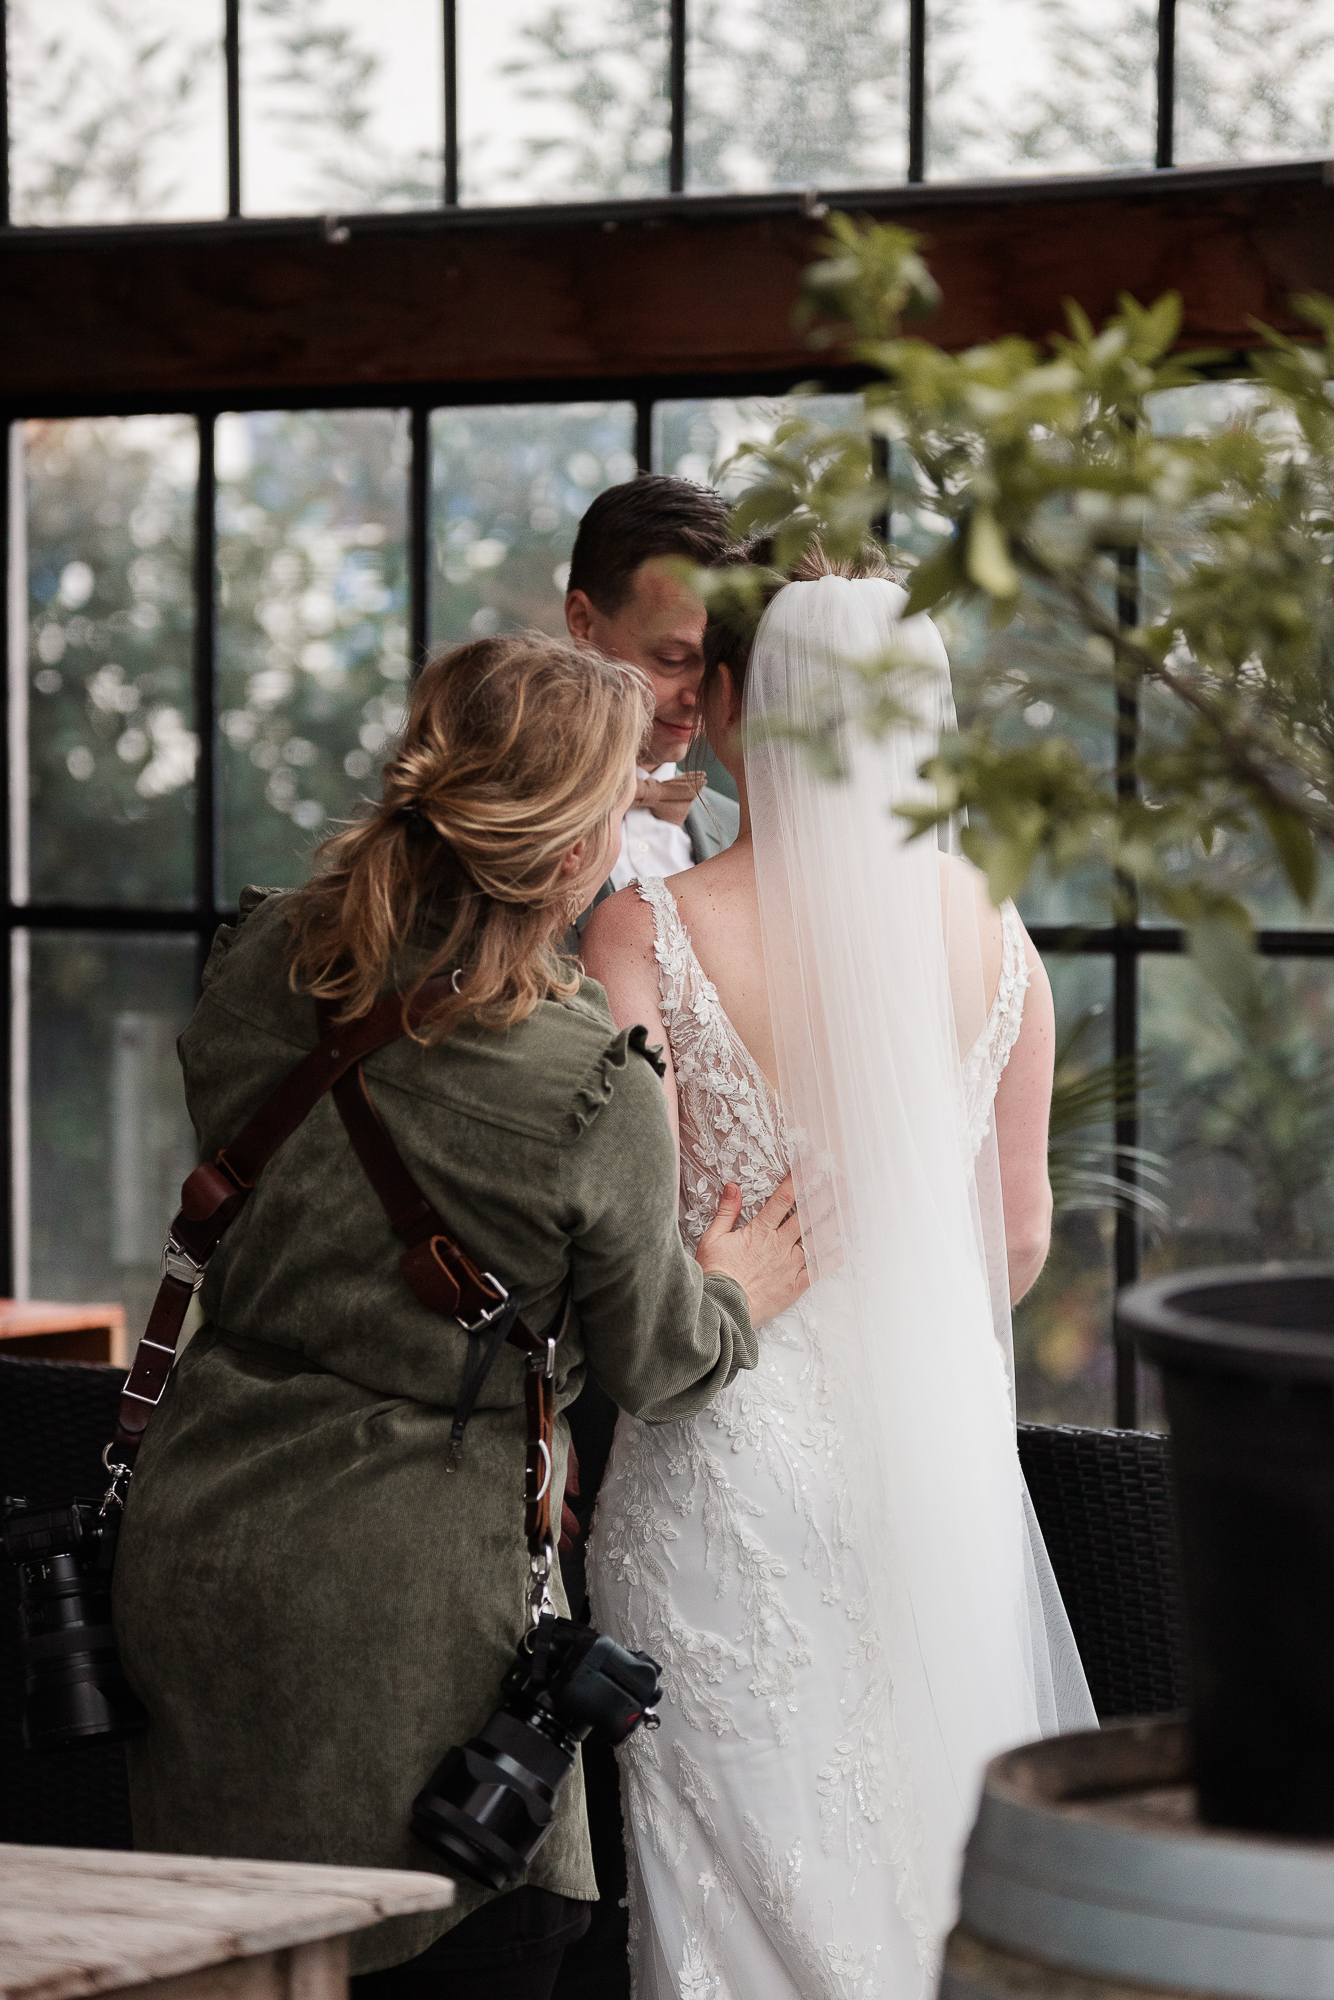 Bruidsfotograaf in actie met bruidspaar tijdens de fotoshoot.